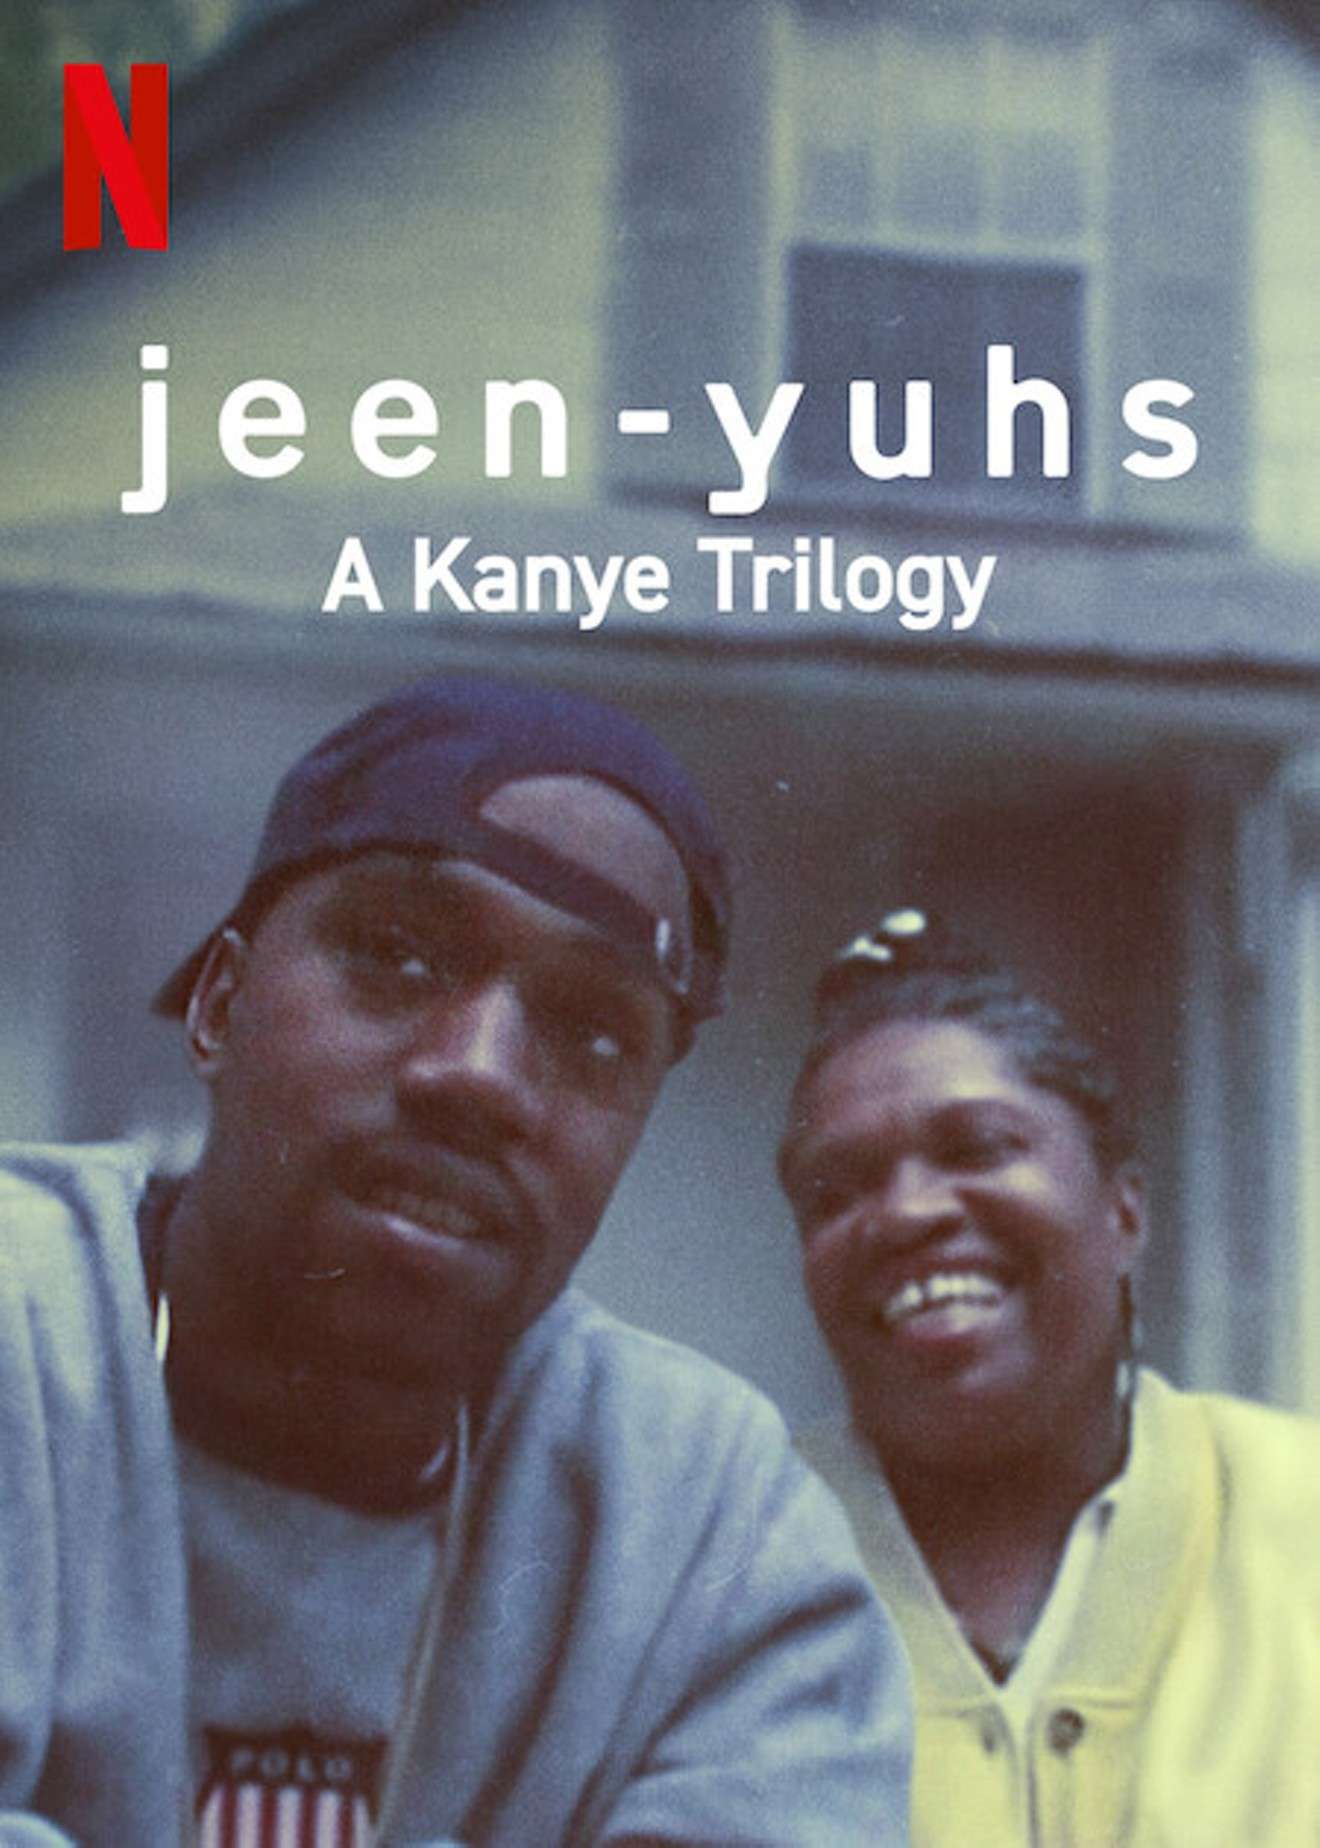 Is“jeen-yuhs A Kanye Trilogy” on Netflix